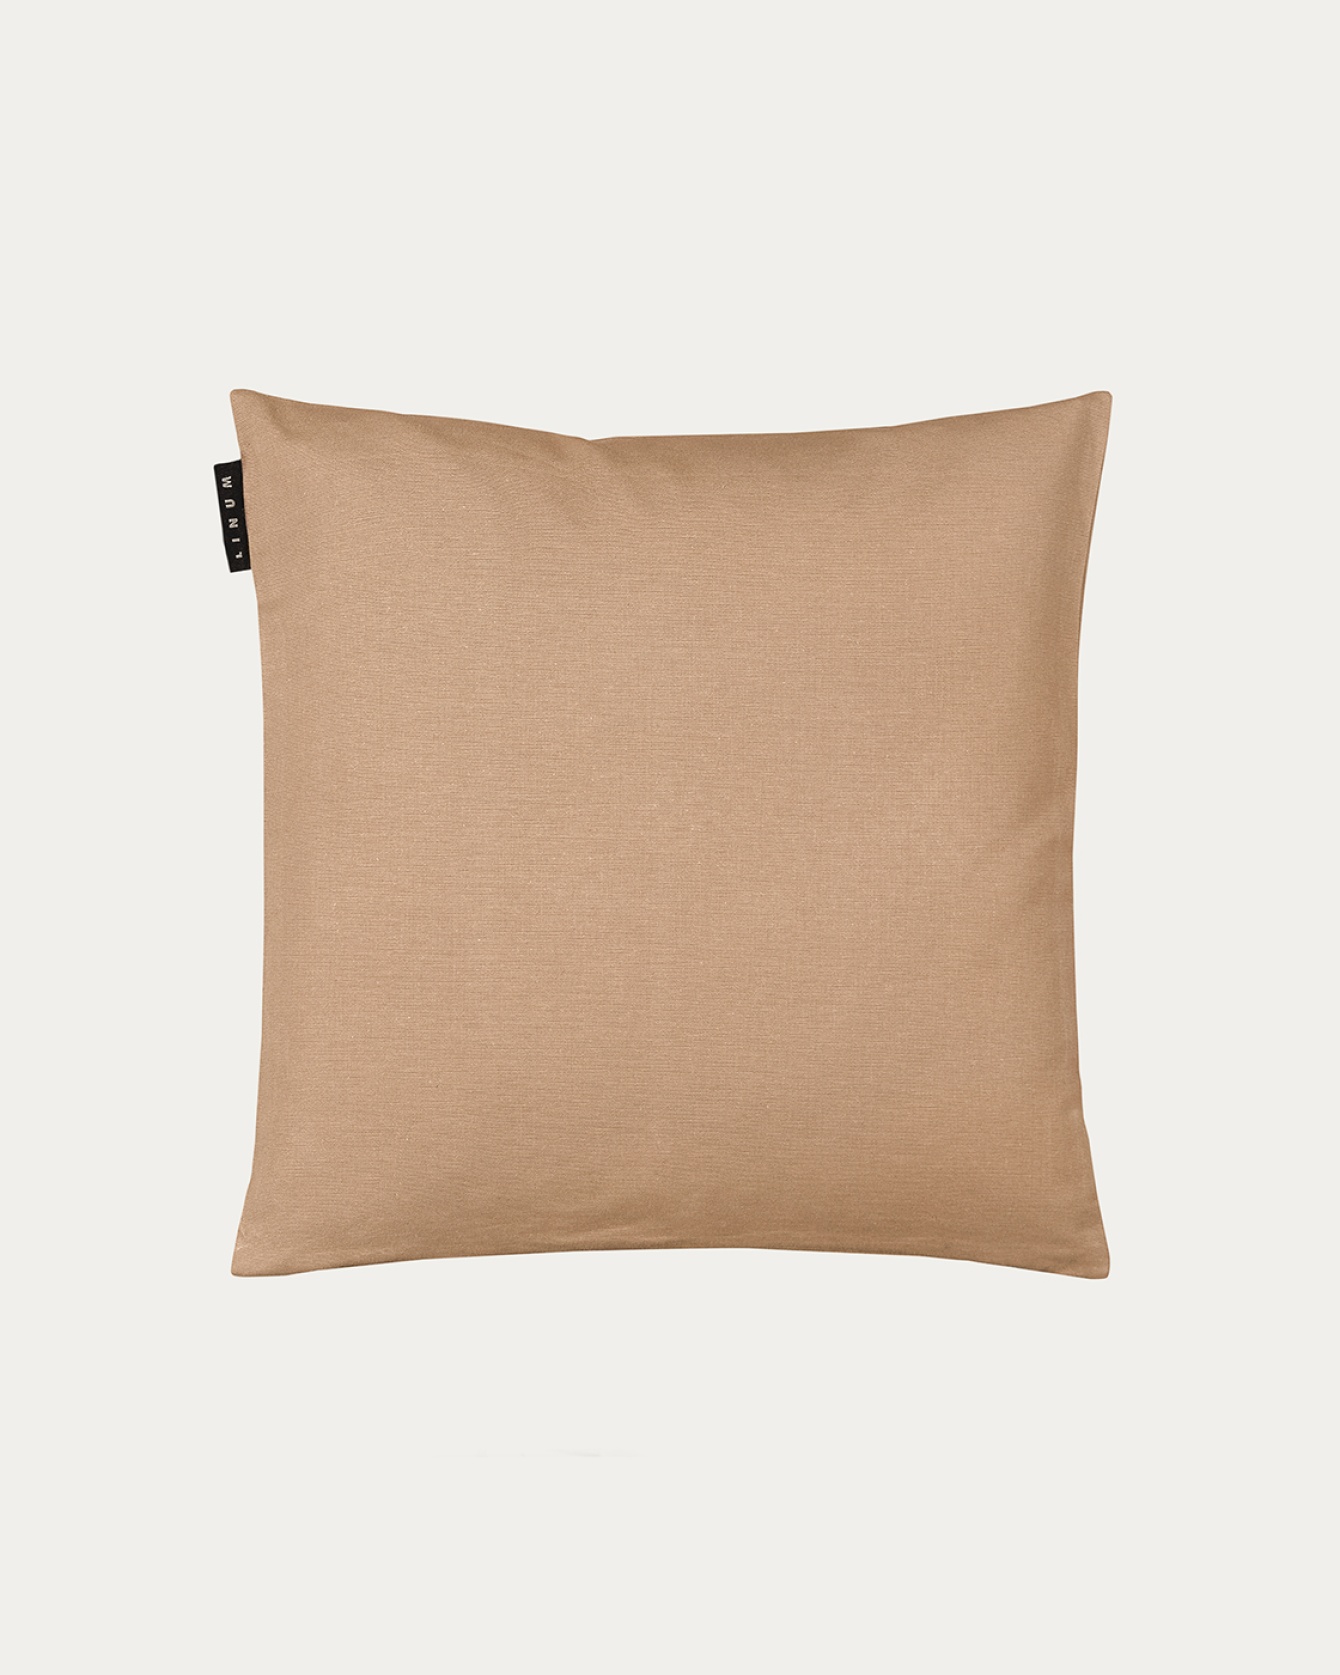 ANNABELL Cushion cover 40x40 cm Camel brown